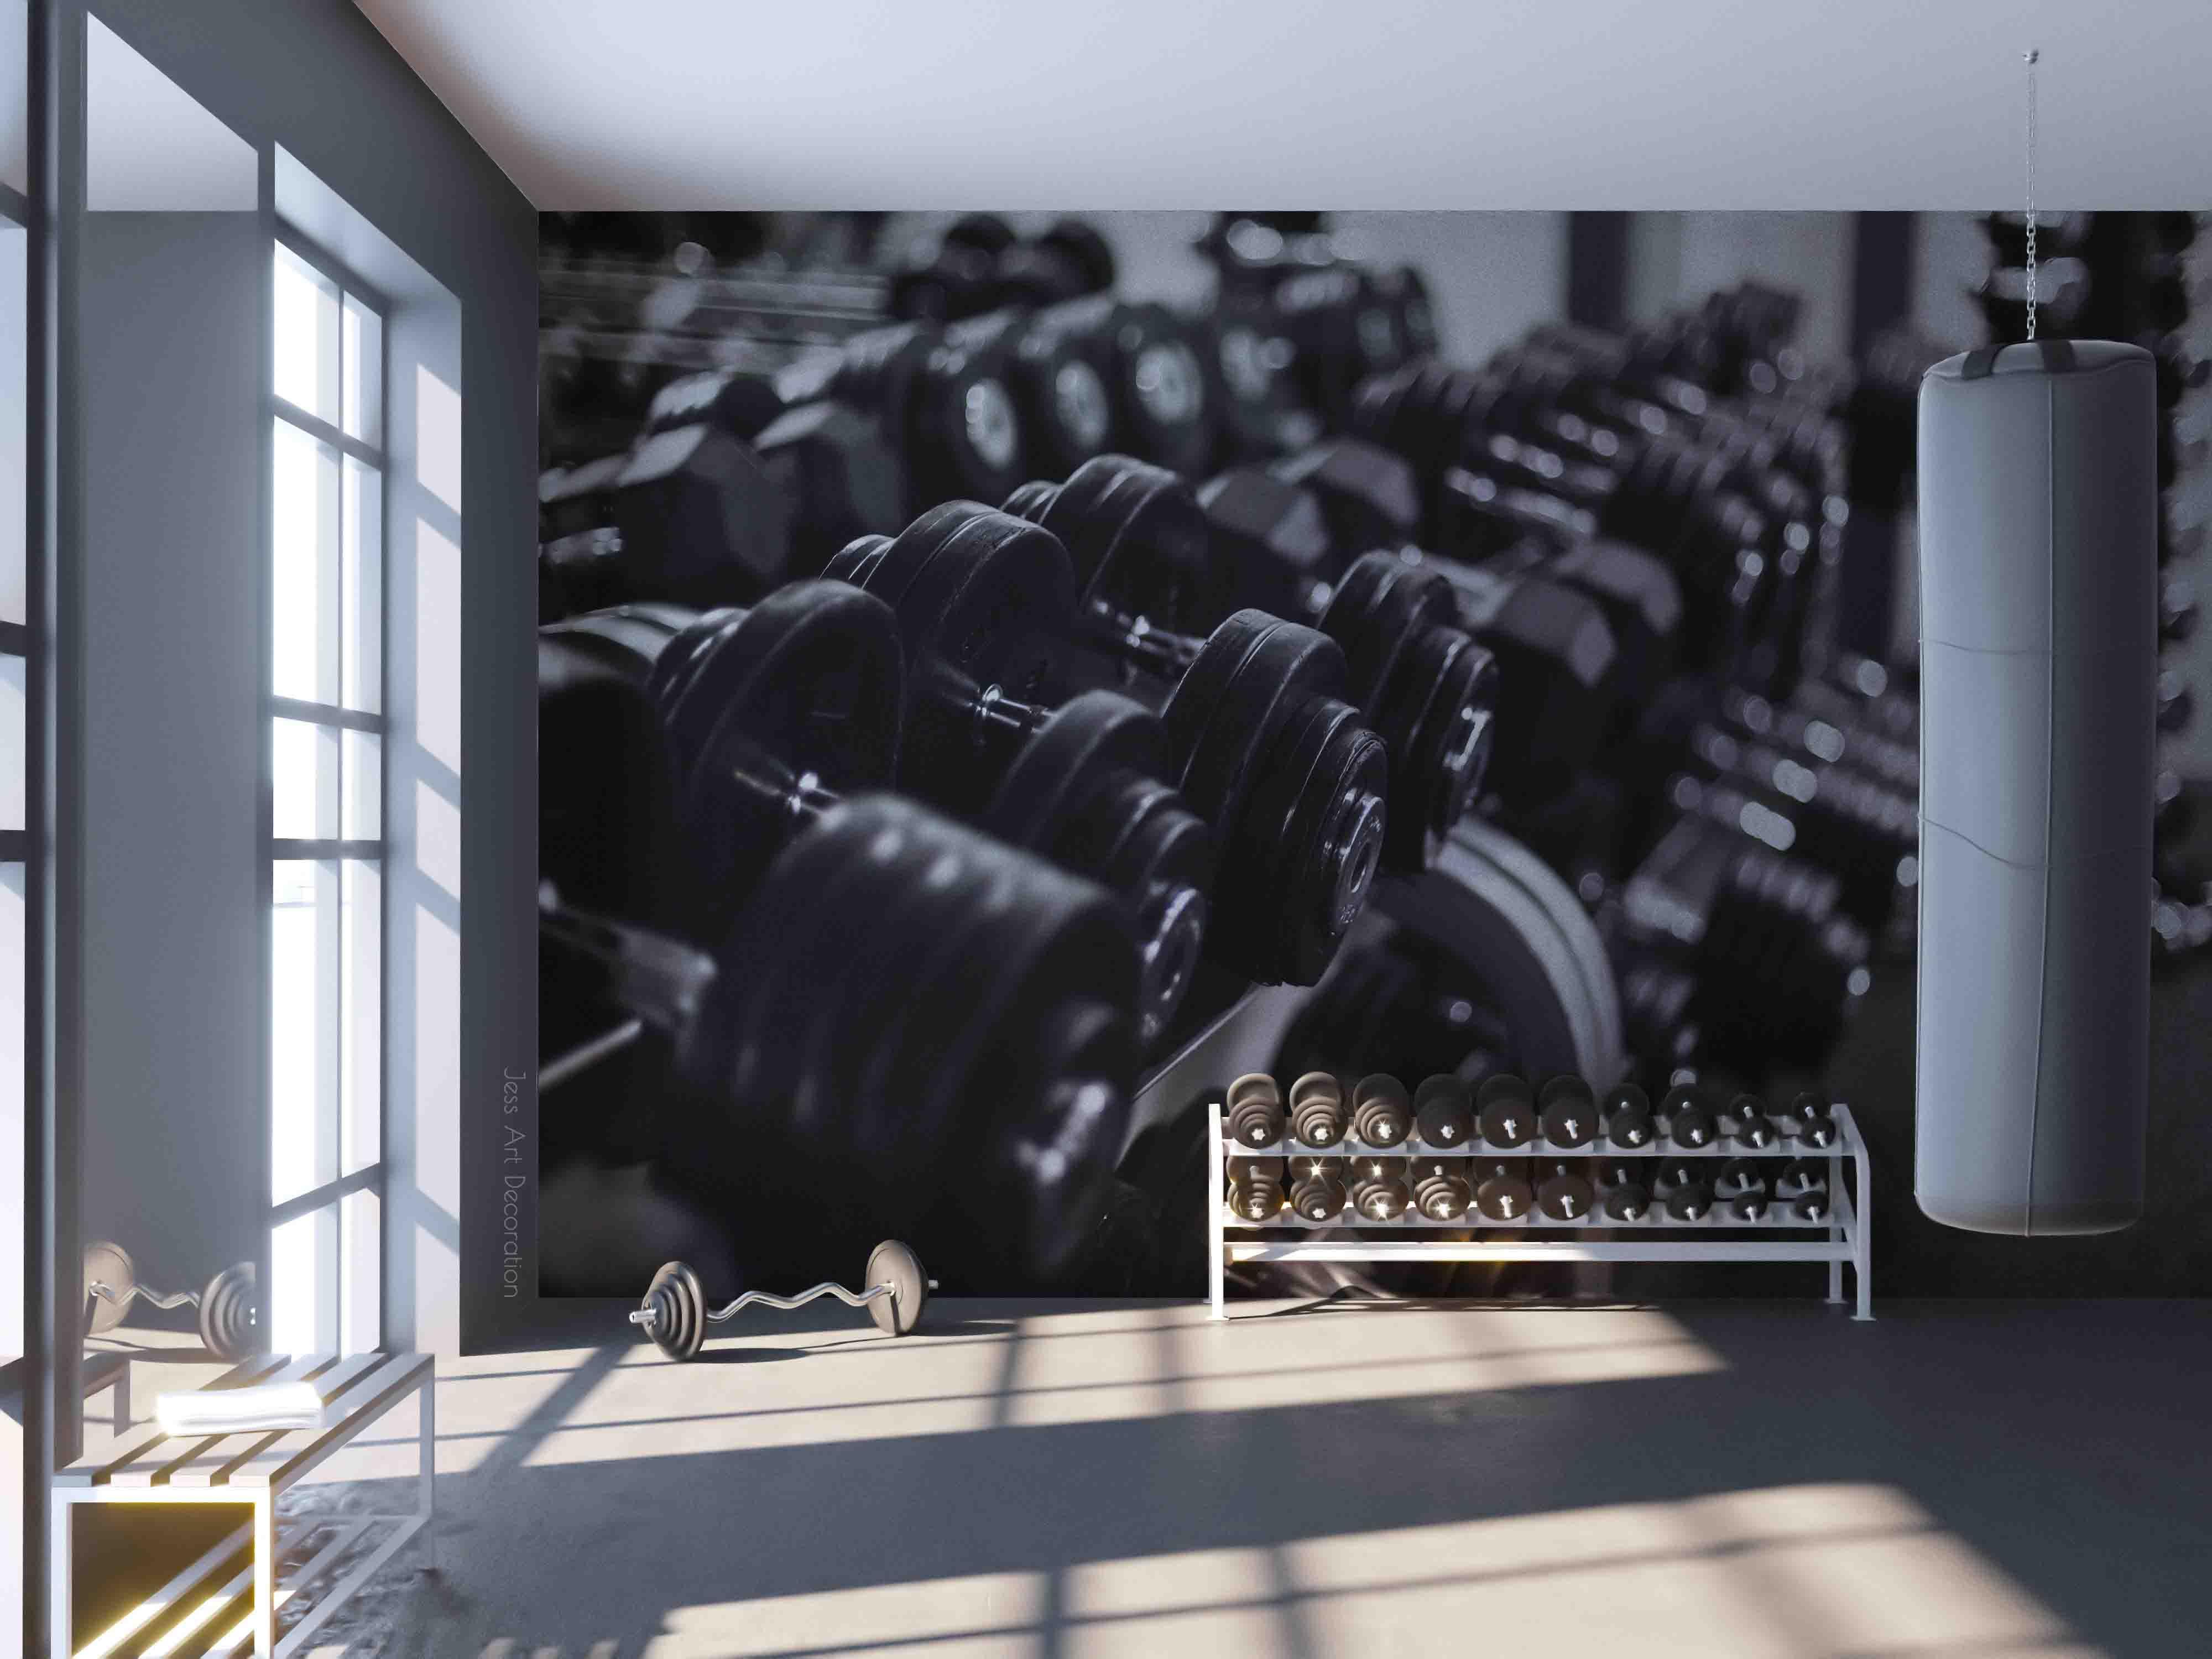 3D Fitness Equipment Dumbbell Wall Mural Wallpaper GD 3000- Jess Art Decoration